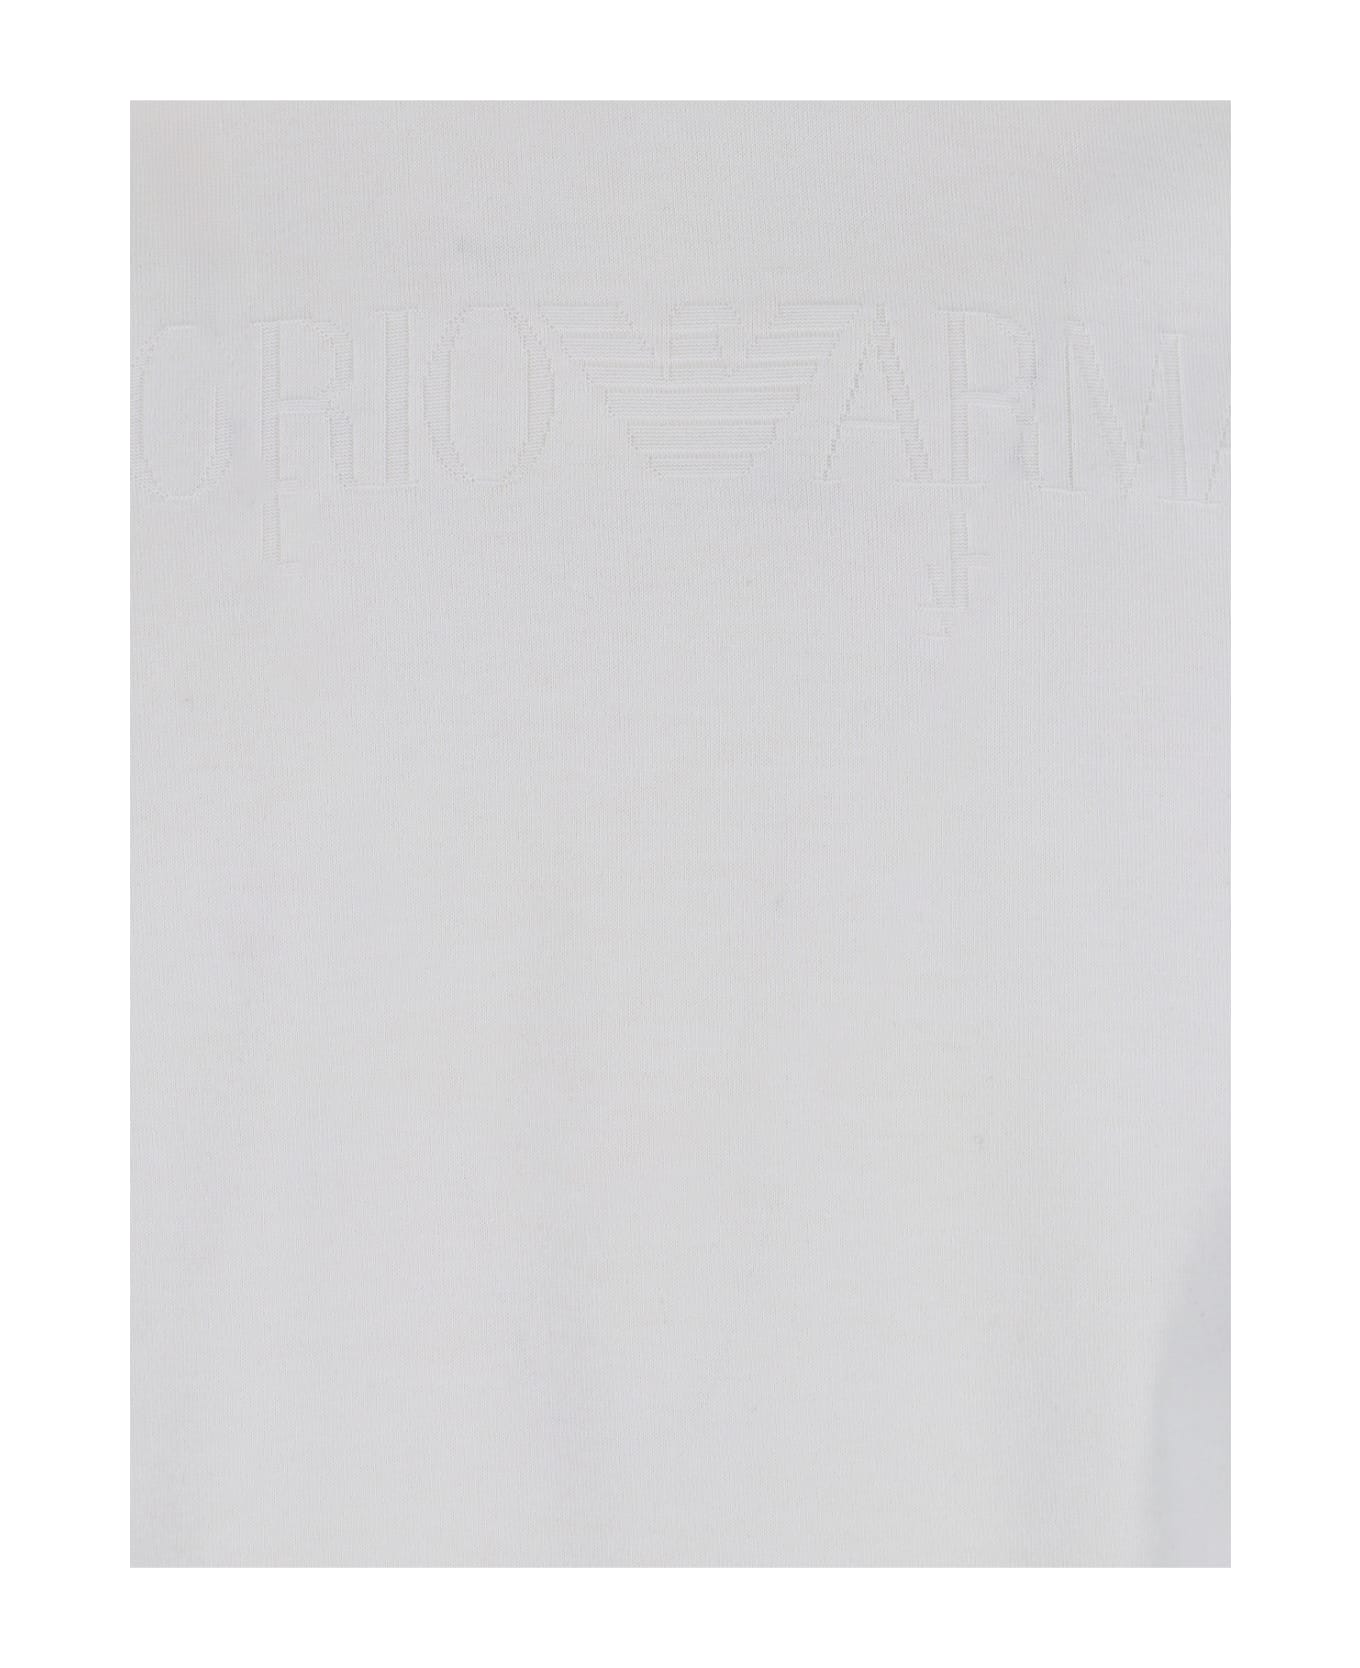 Emporio Armani Logo T-shirt - White